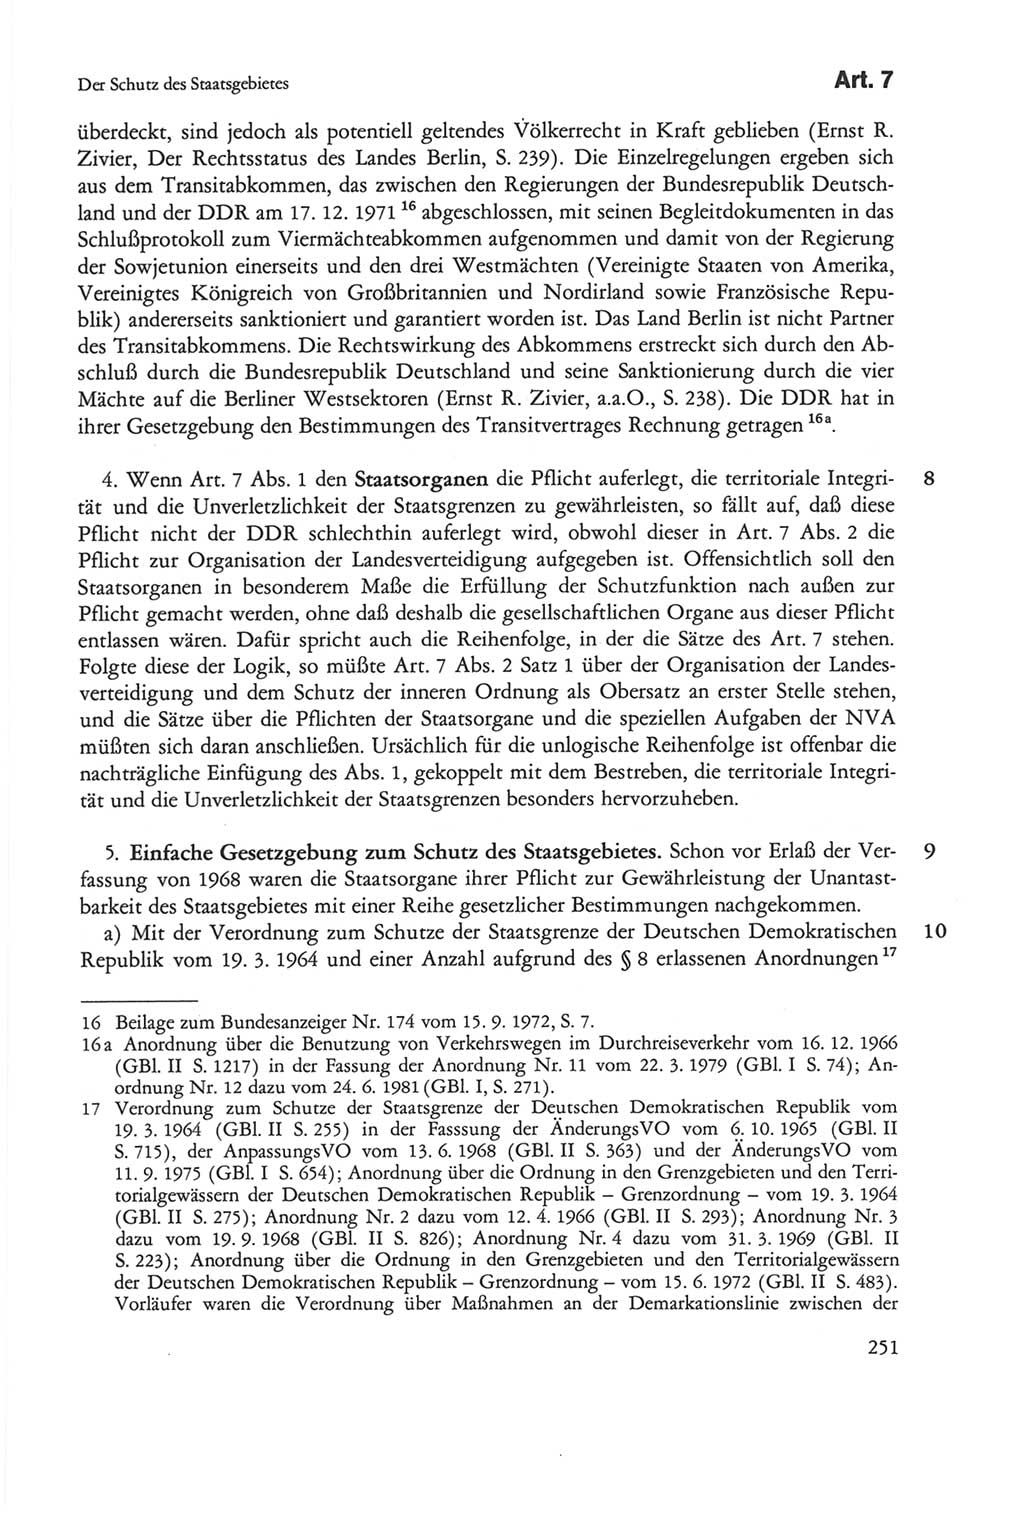 Die sozialistische Verfassung der Deutschen Demokratischen Republik (DDR), Kommentar 1982, Seite 251 (Soz. Verf. DDR Komm. 1982, S. 251)